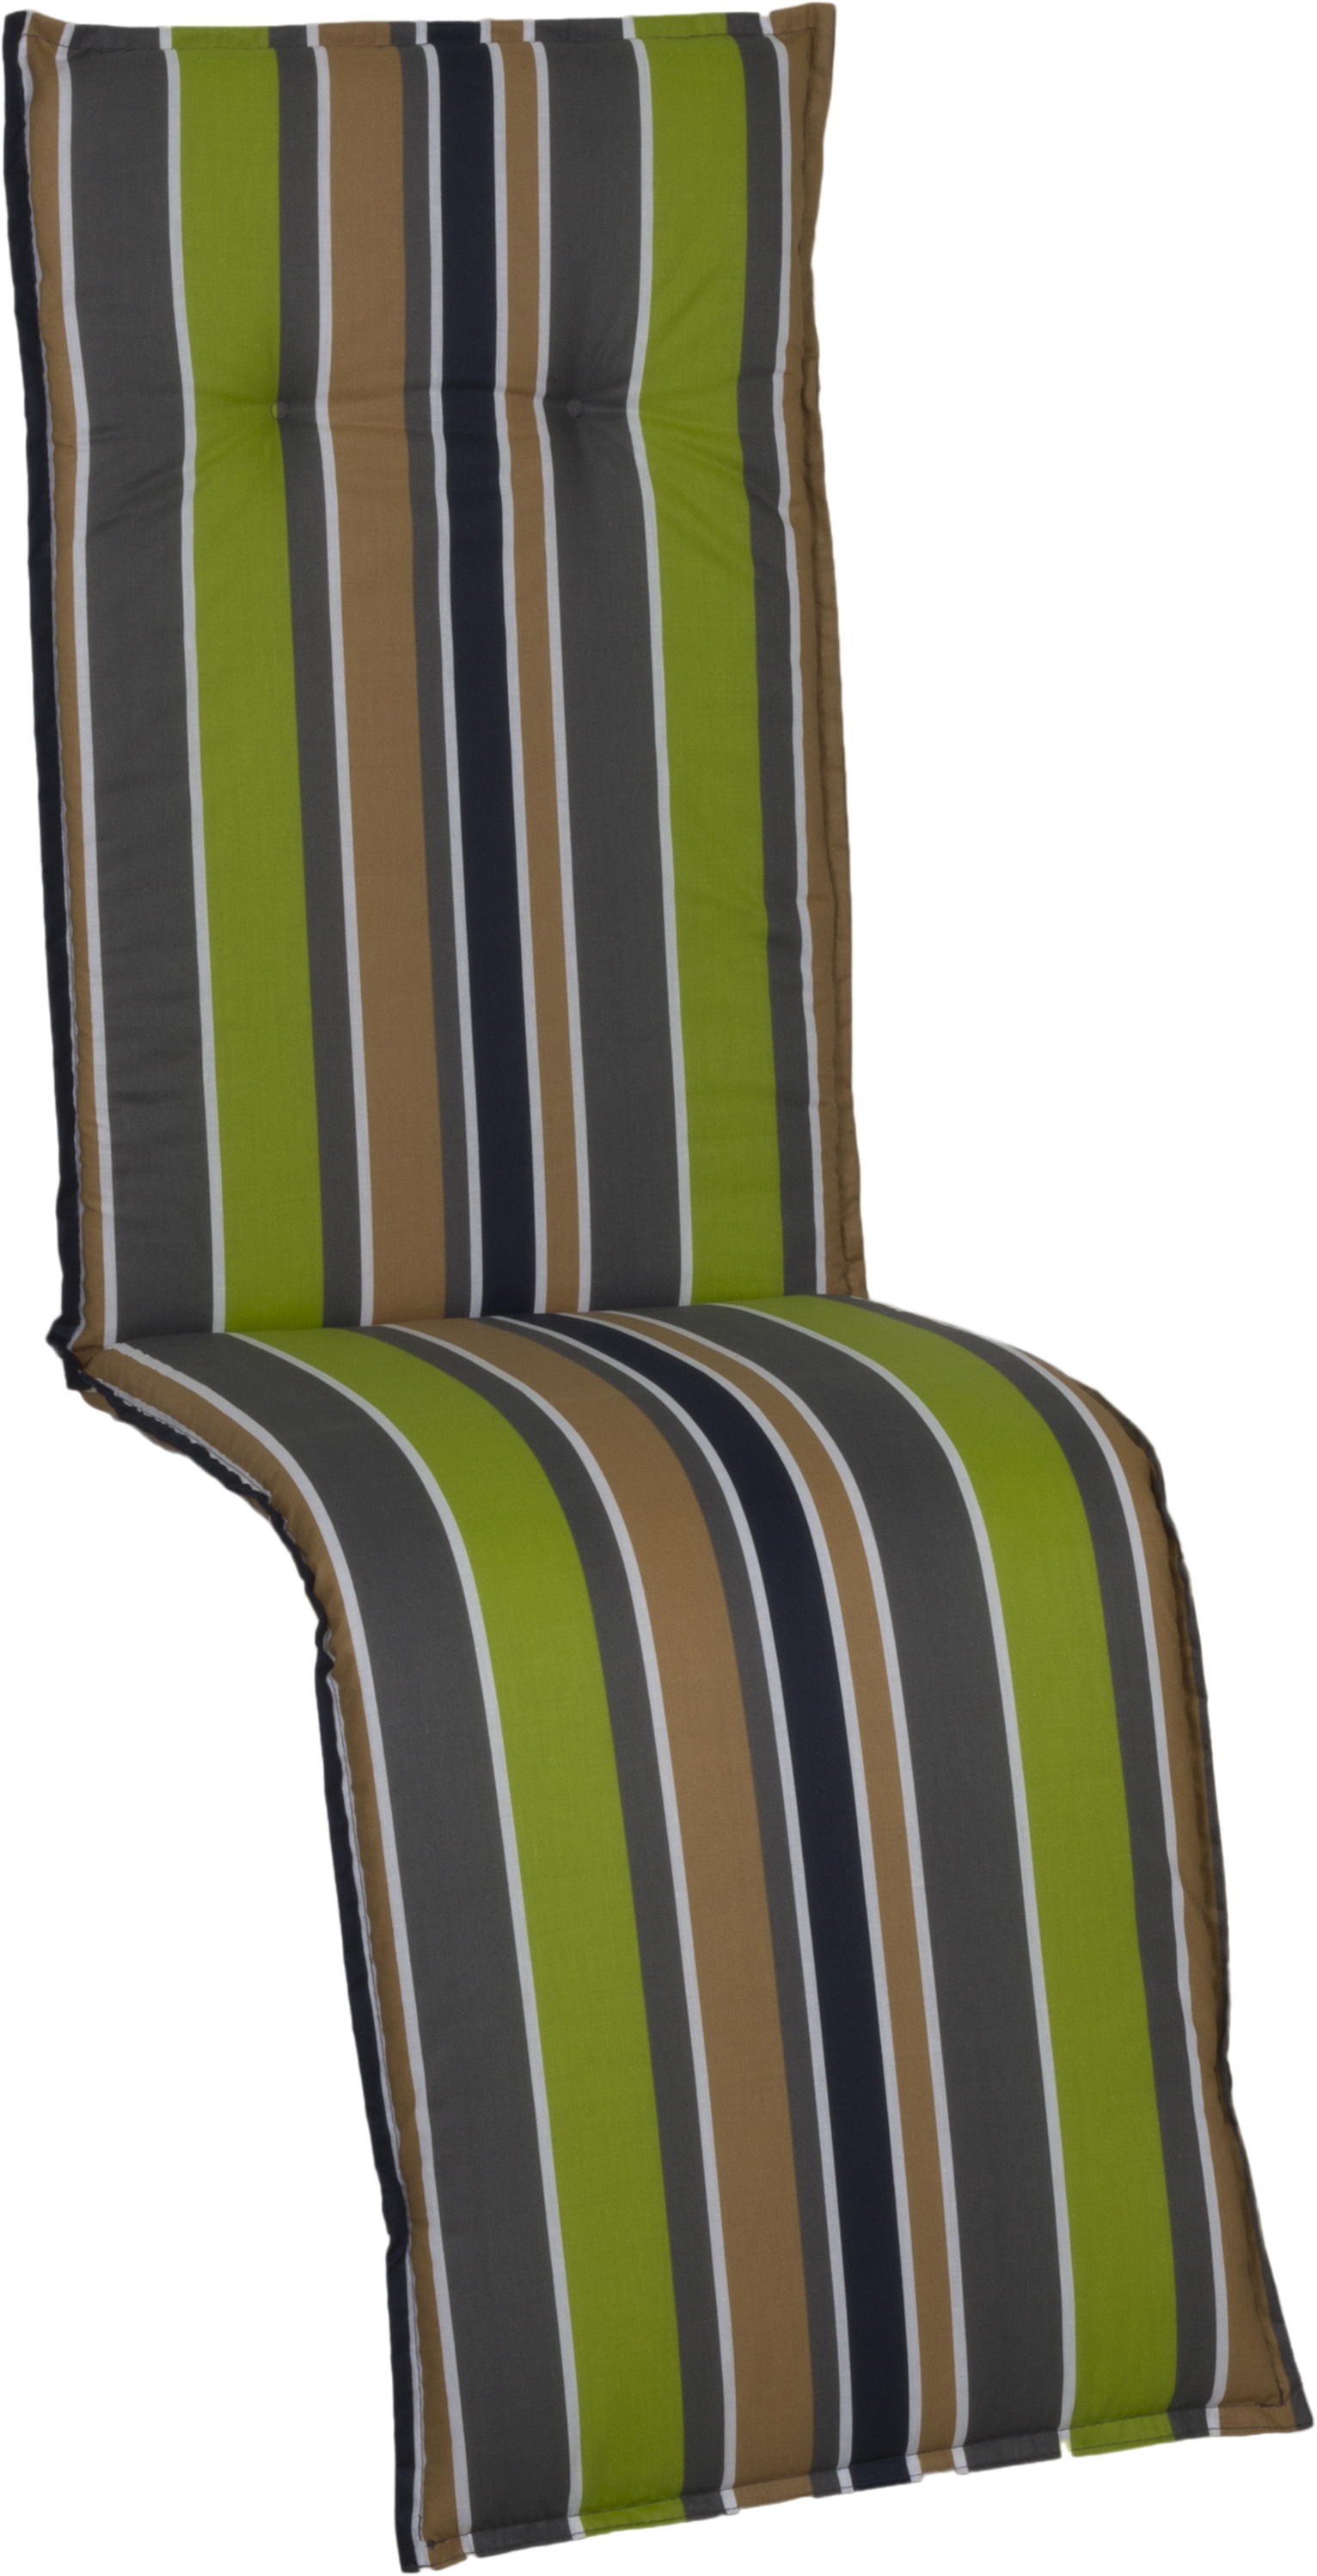 Polster für Relax Gartenmöbel in gestreift, dunkelgrau, braun, beige, grün und weiß